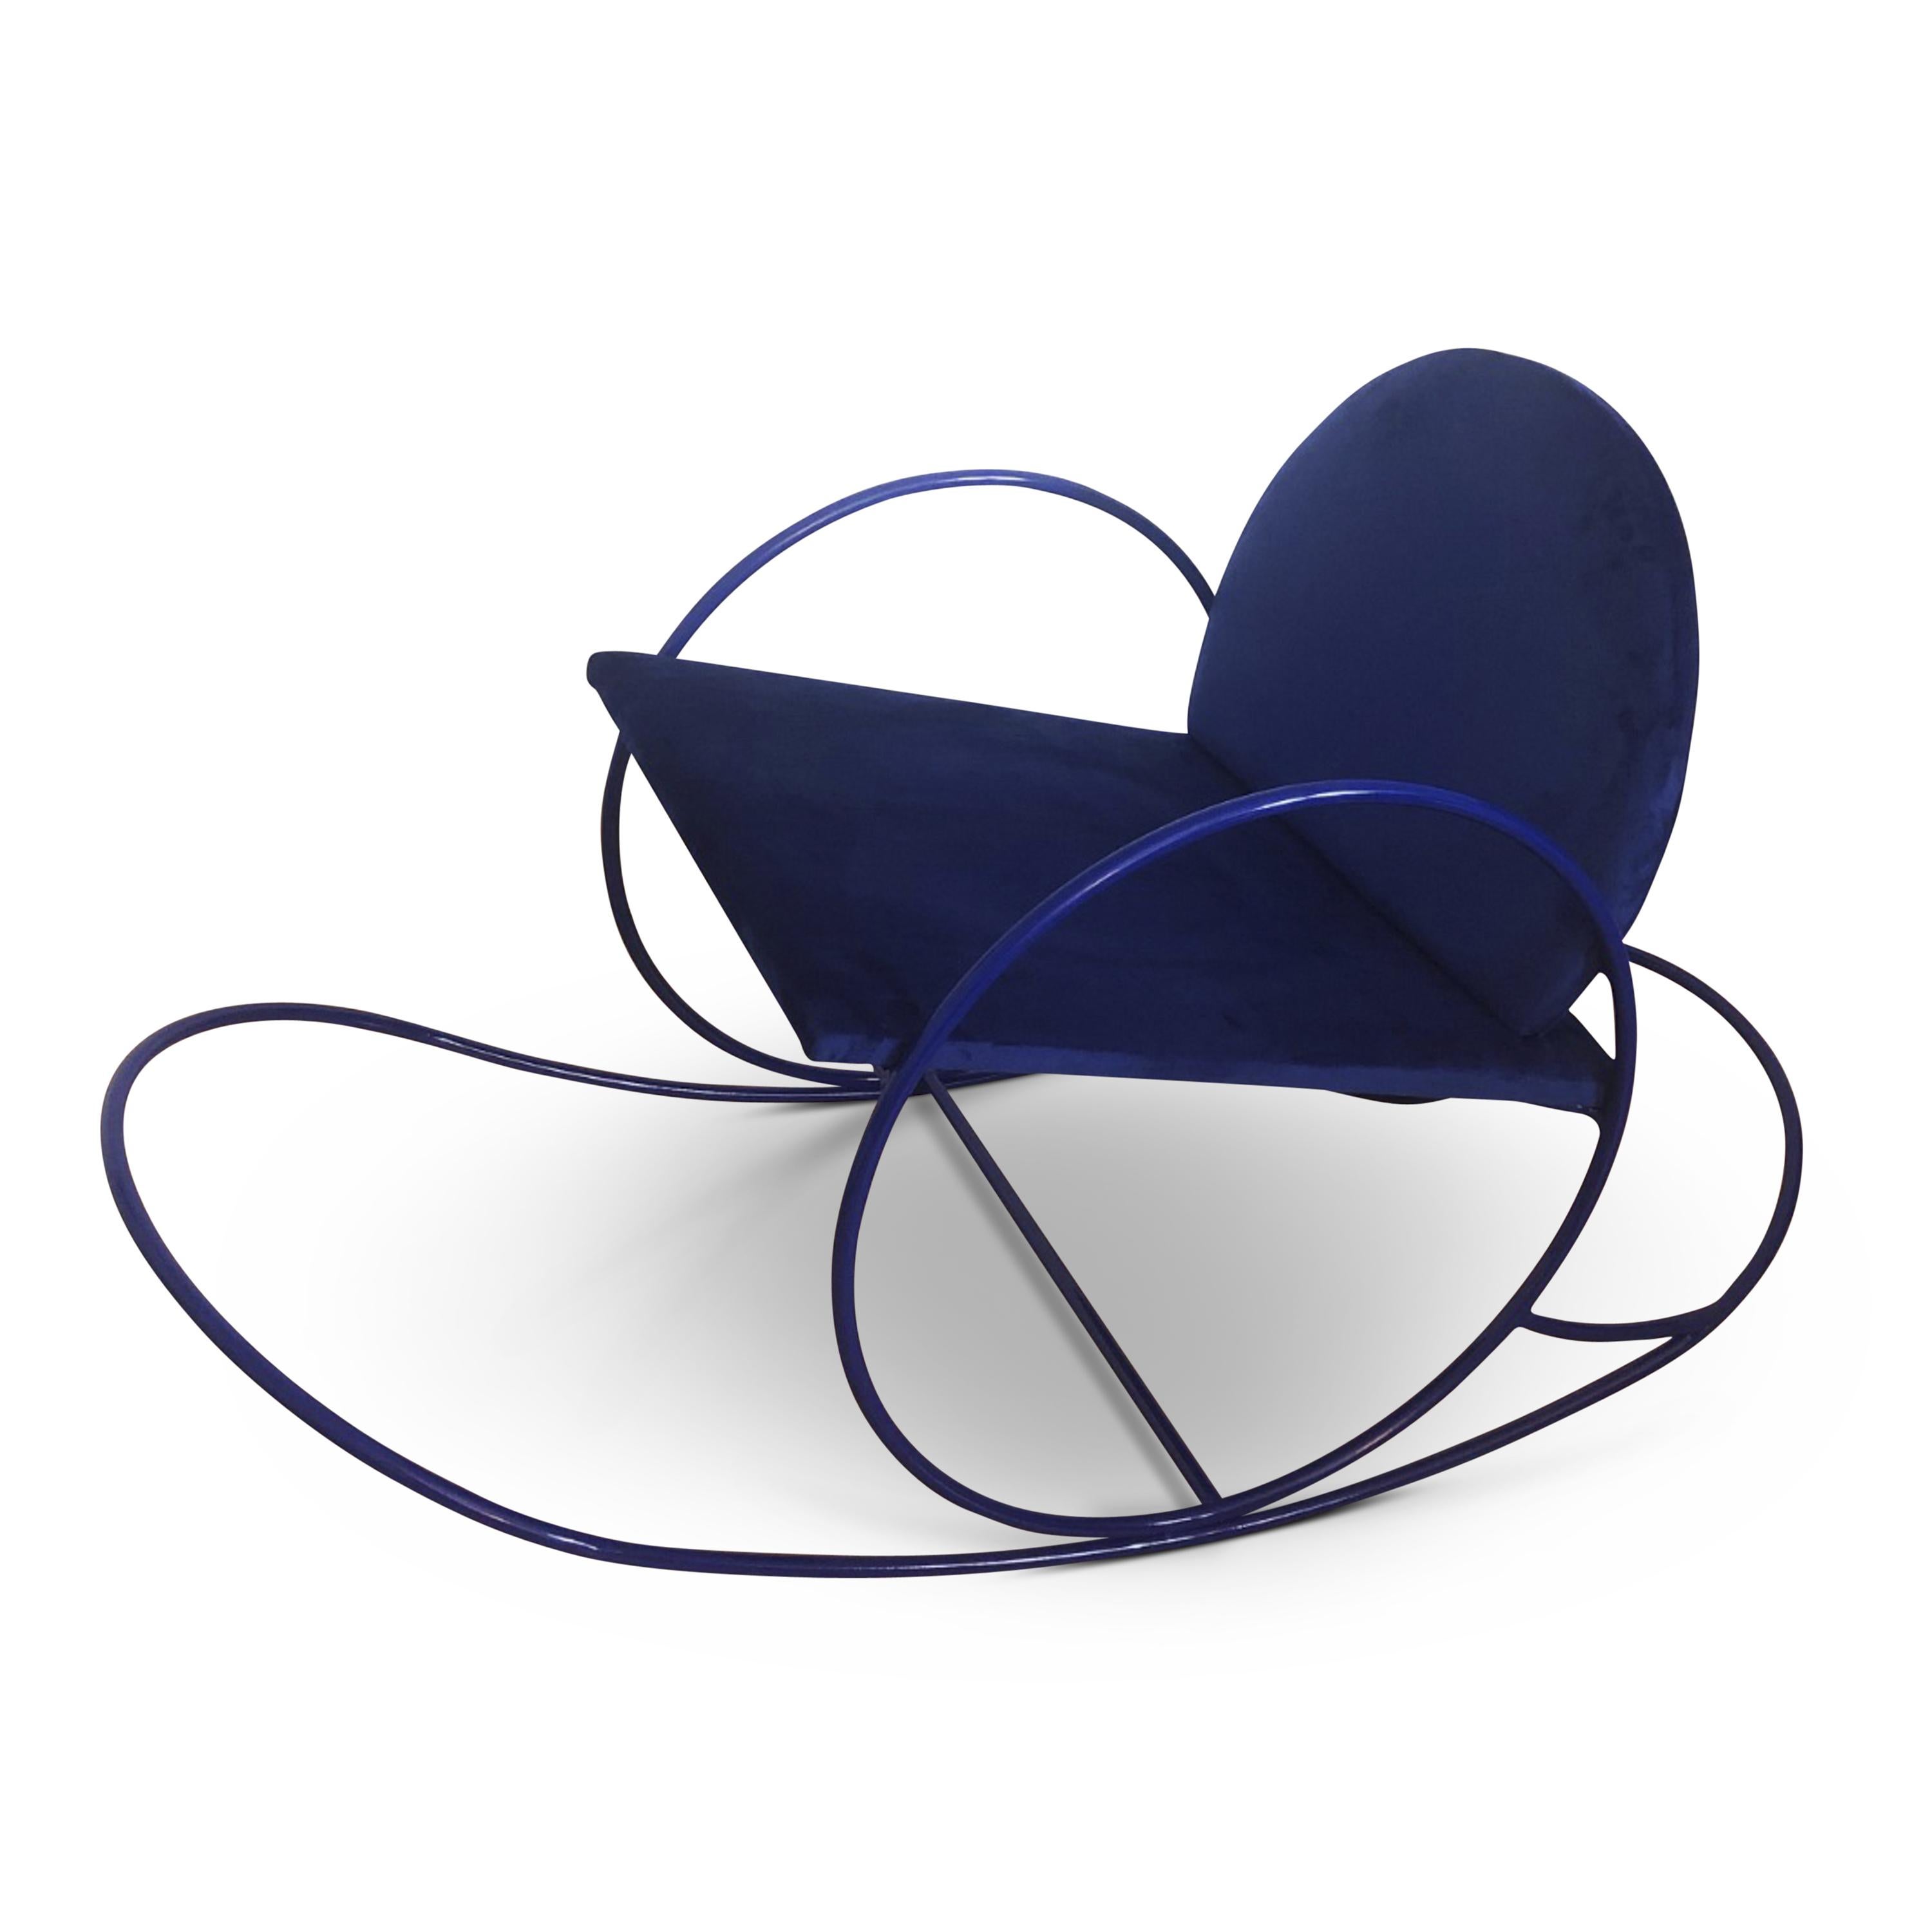 Der von Angel Mombiedro entworfene Sessel hat eine geschwungene Form, ein Metallgestell und eine mit dunkelblauem Samt gepolsterte Sitzfläche und Rückenlehne.
